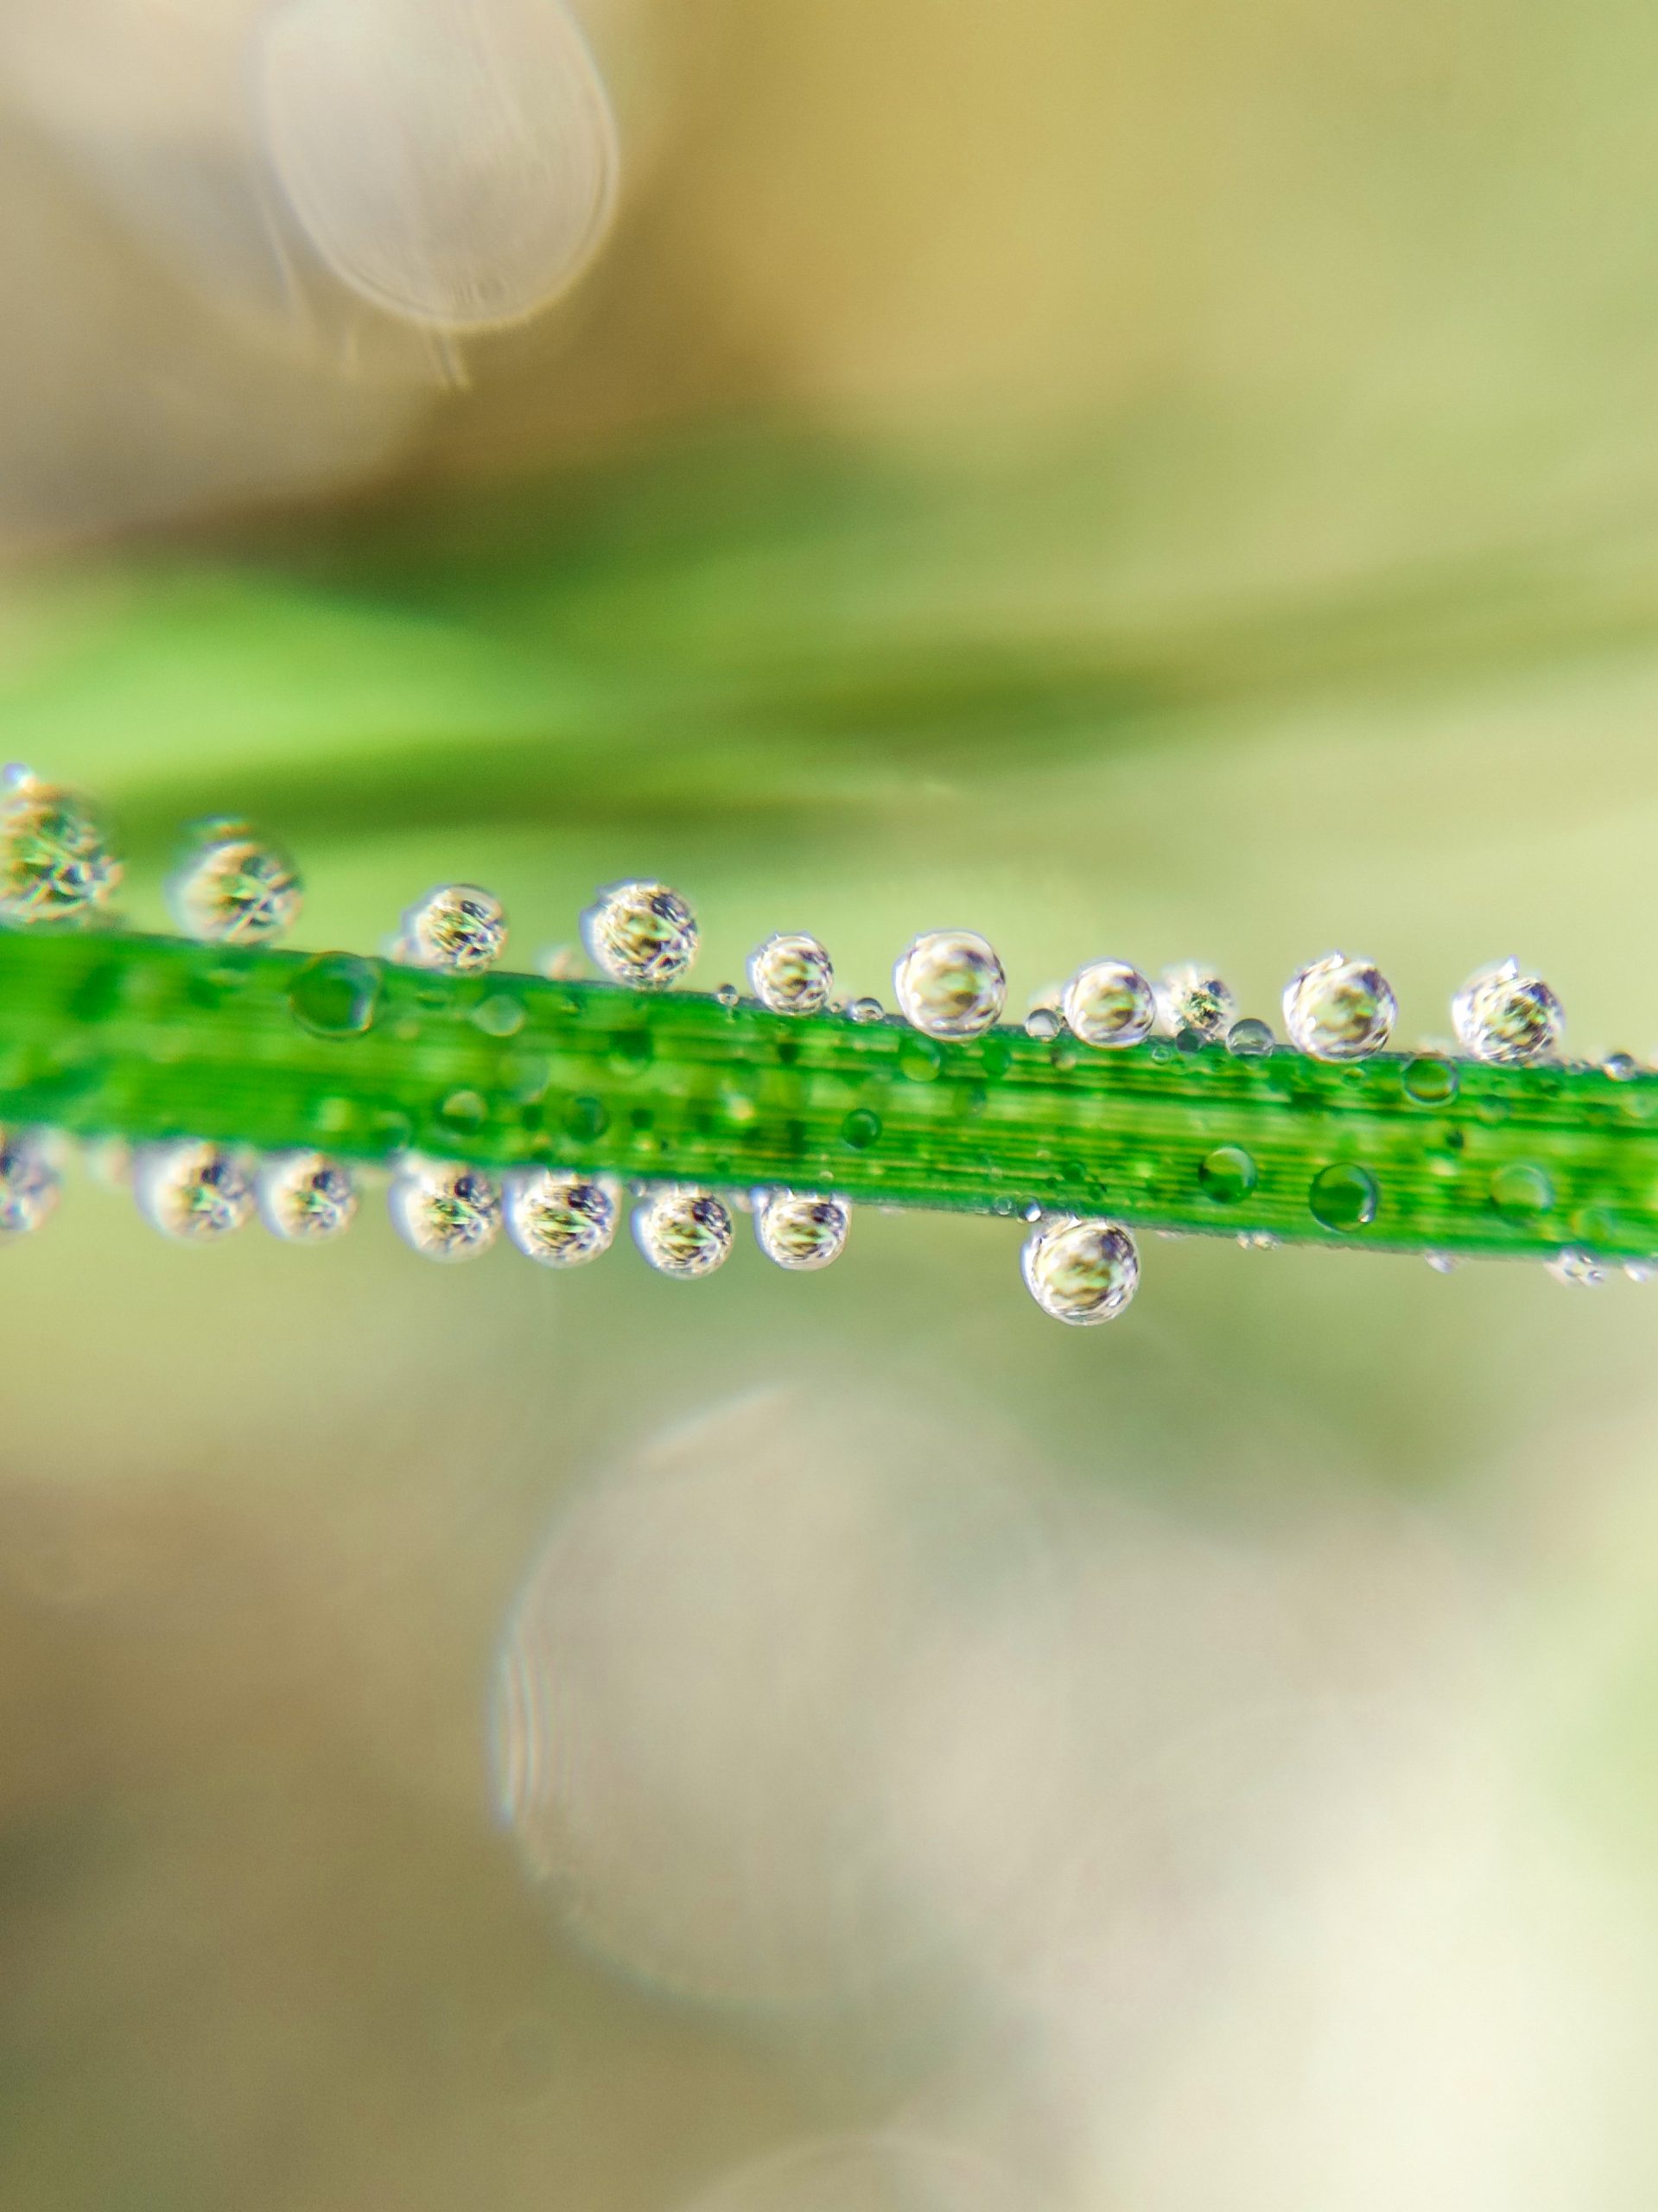 Dew drops on a grass leaf